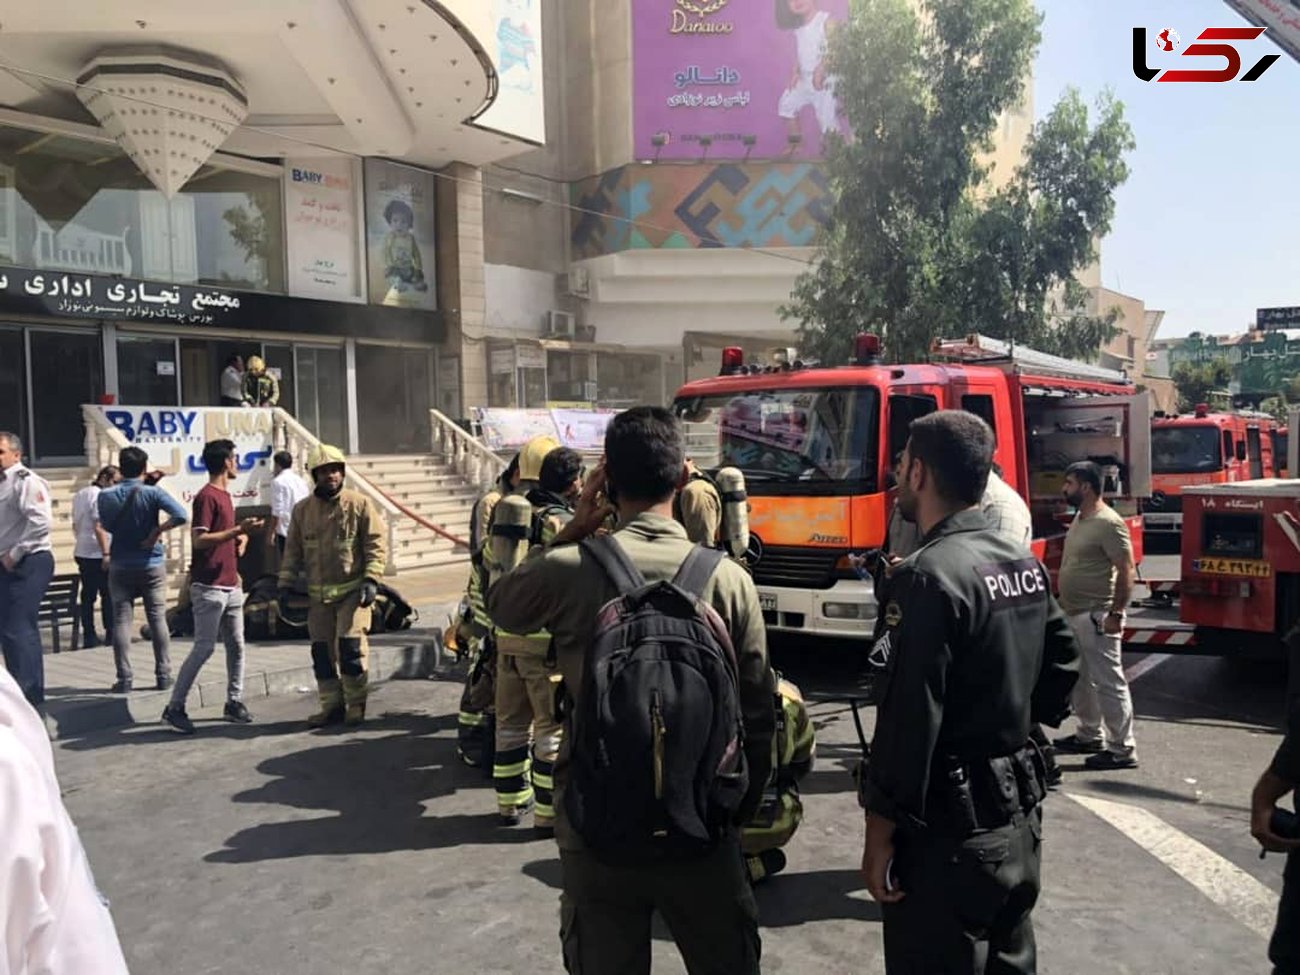 جزییات زنده زنده سوختن مرد تهرانی در آتش سوزی برج بهار! + تصاویر